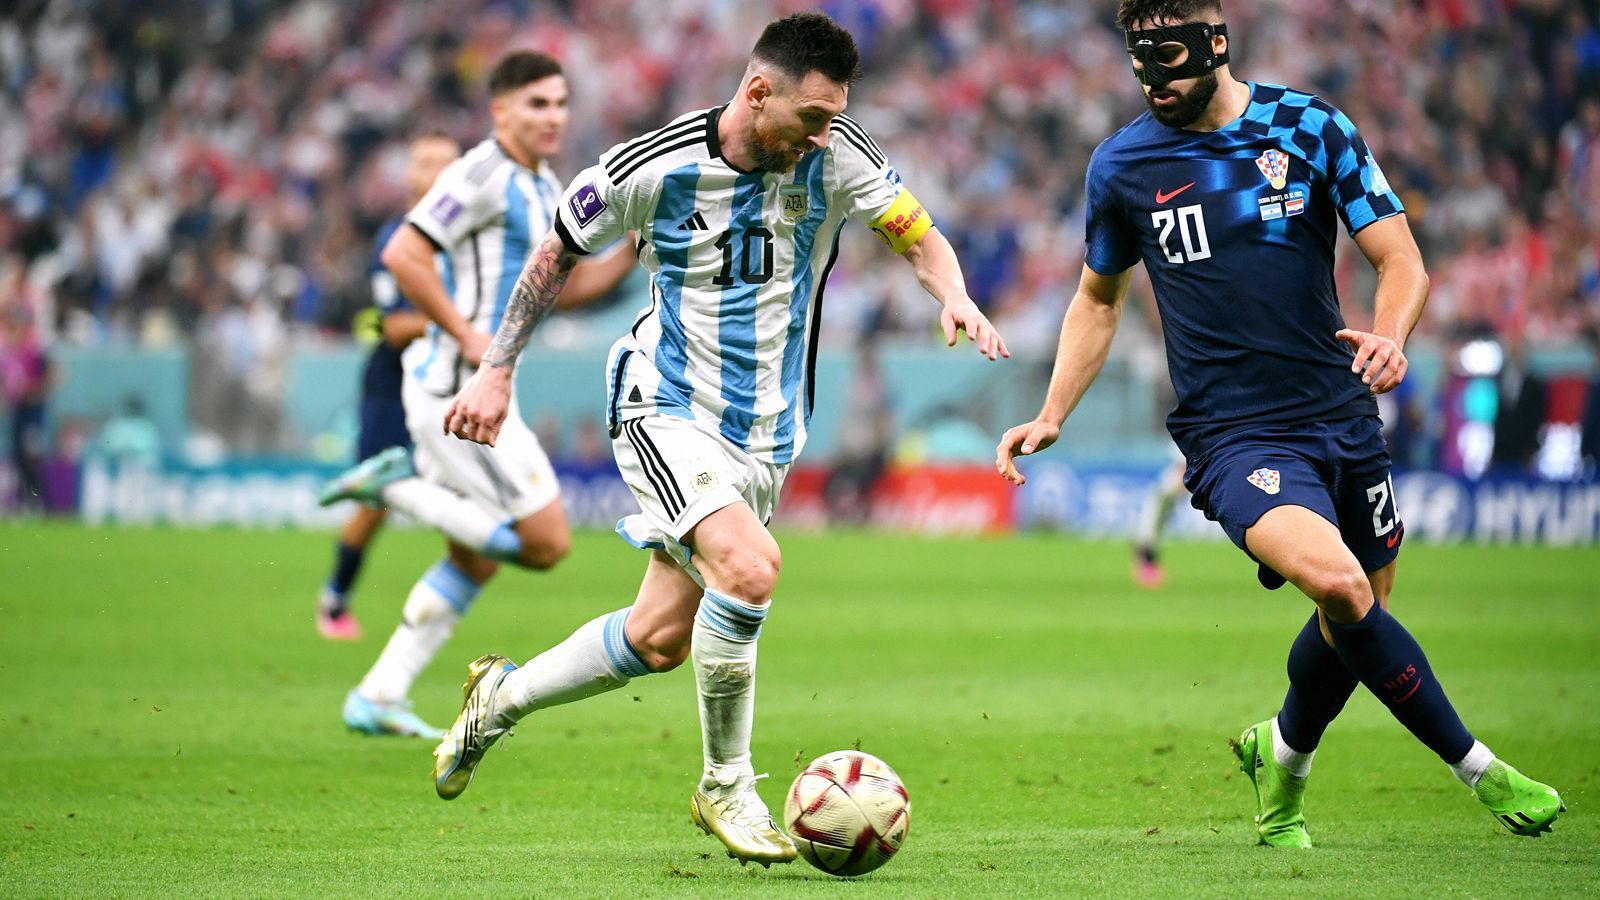 
                <strong>Die meisten Spiele bei einer WM insgesamt (geknackt, 26 Spiele) </strong><br>
                Messi hat mit dem Finale den bisherigen Rekordhalter Lothar Matthäus überholt. Der deutsche Rekord-Nationalspieler gratulierte Messi: "Ich gönne es ihm", sagte Matthäus. Messi sei "der kompletteste Fußballer unserer Zeit". Der Argentinier ist mit 26 Einsätzen alleiniger Rekordhalter und der Spieler mit den meisten Spielen bei Weltmeisterschaften insgesamt. Rekordspieler Argentiniens bei Weltmeisterschaften ist Messi schon länger: Hier hat er u.a. Diego Maradona (21 Spiele) und Javier Mascherano (20 Spiele) überholt.  
              